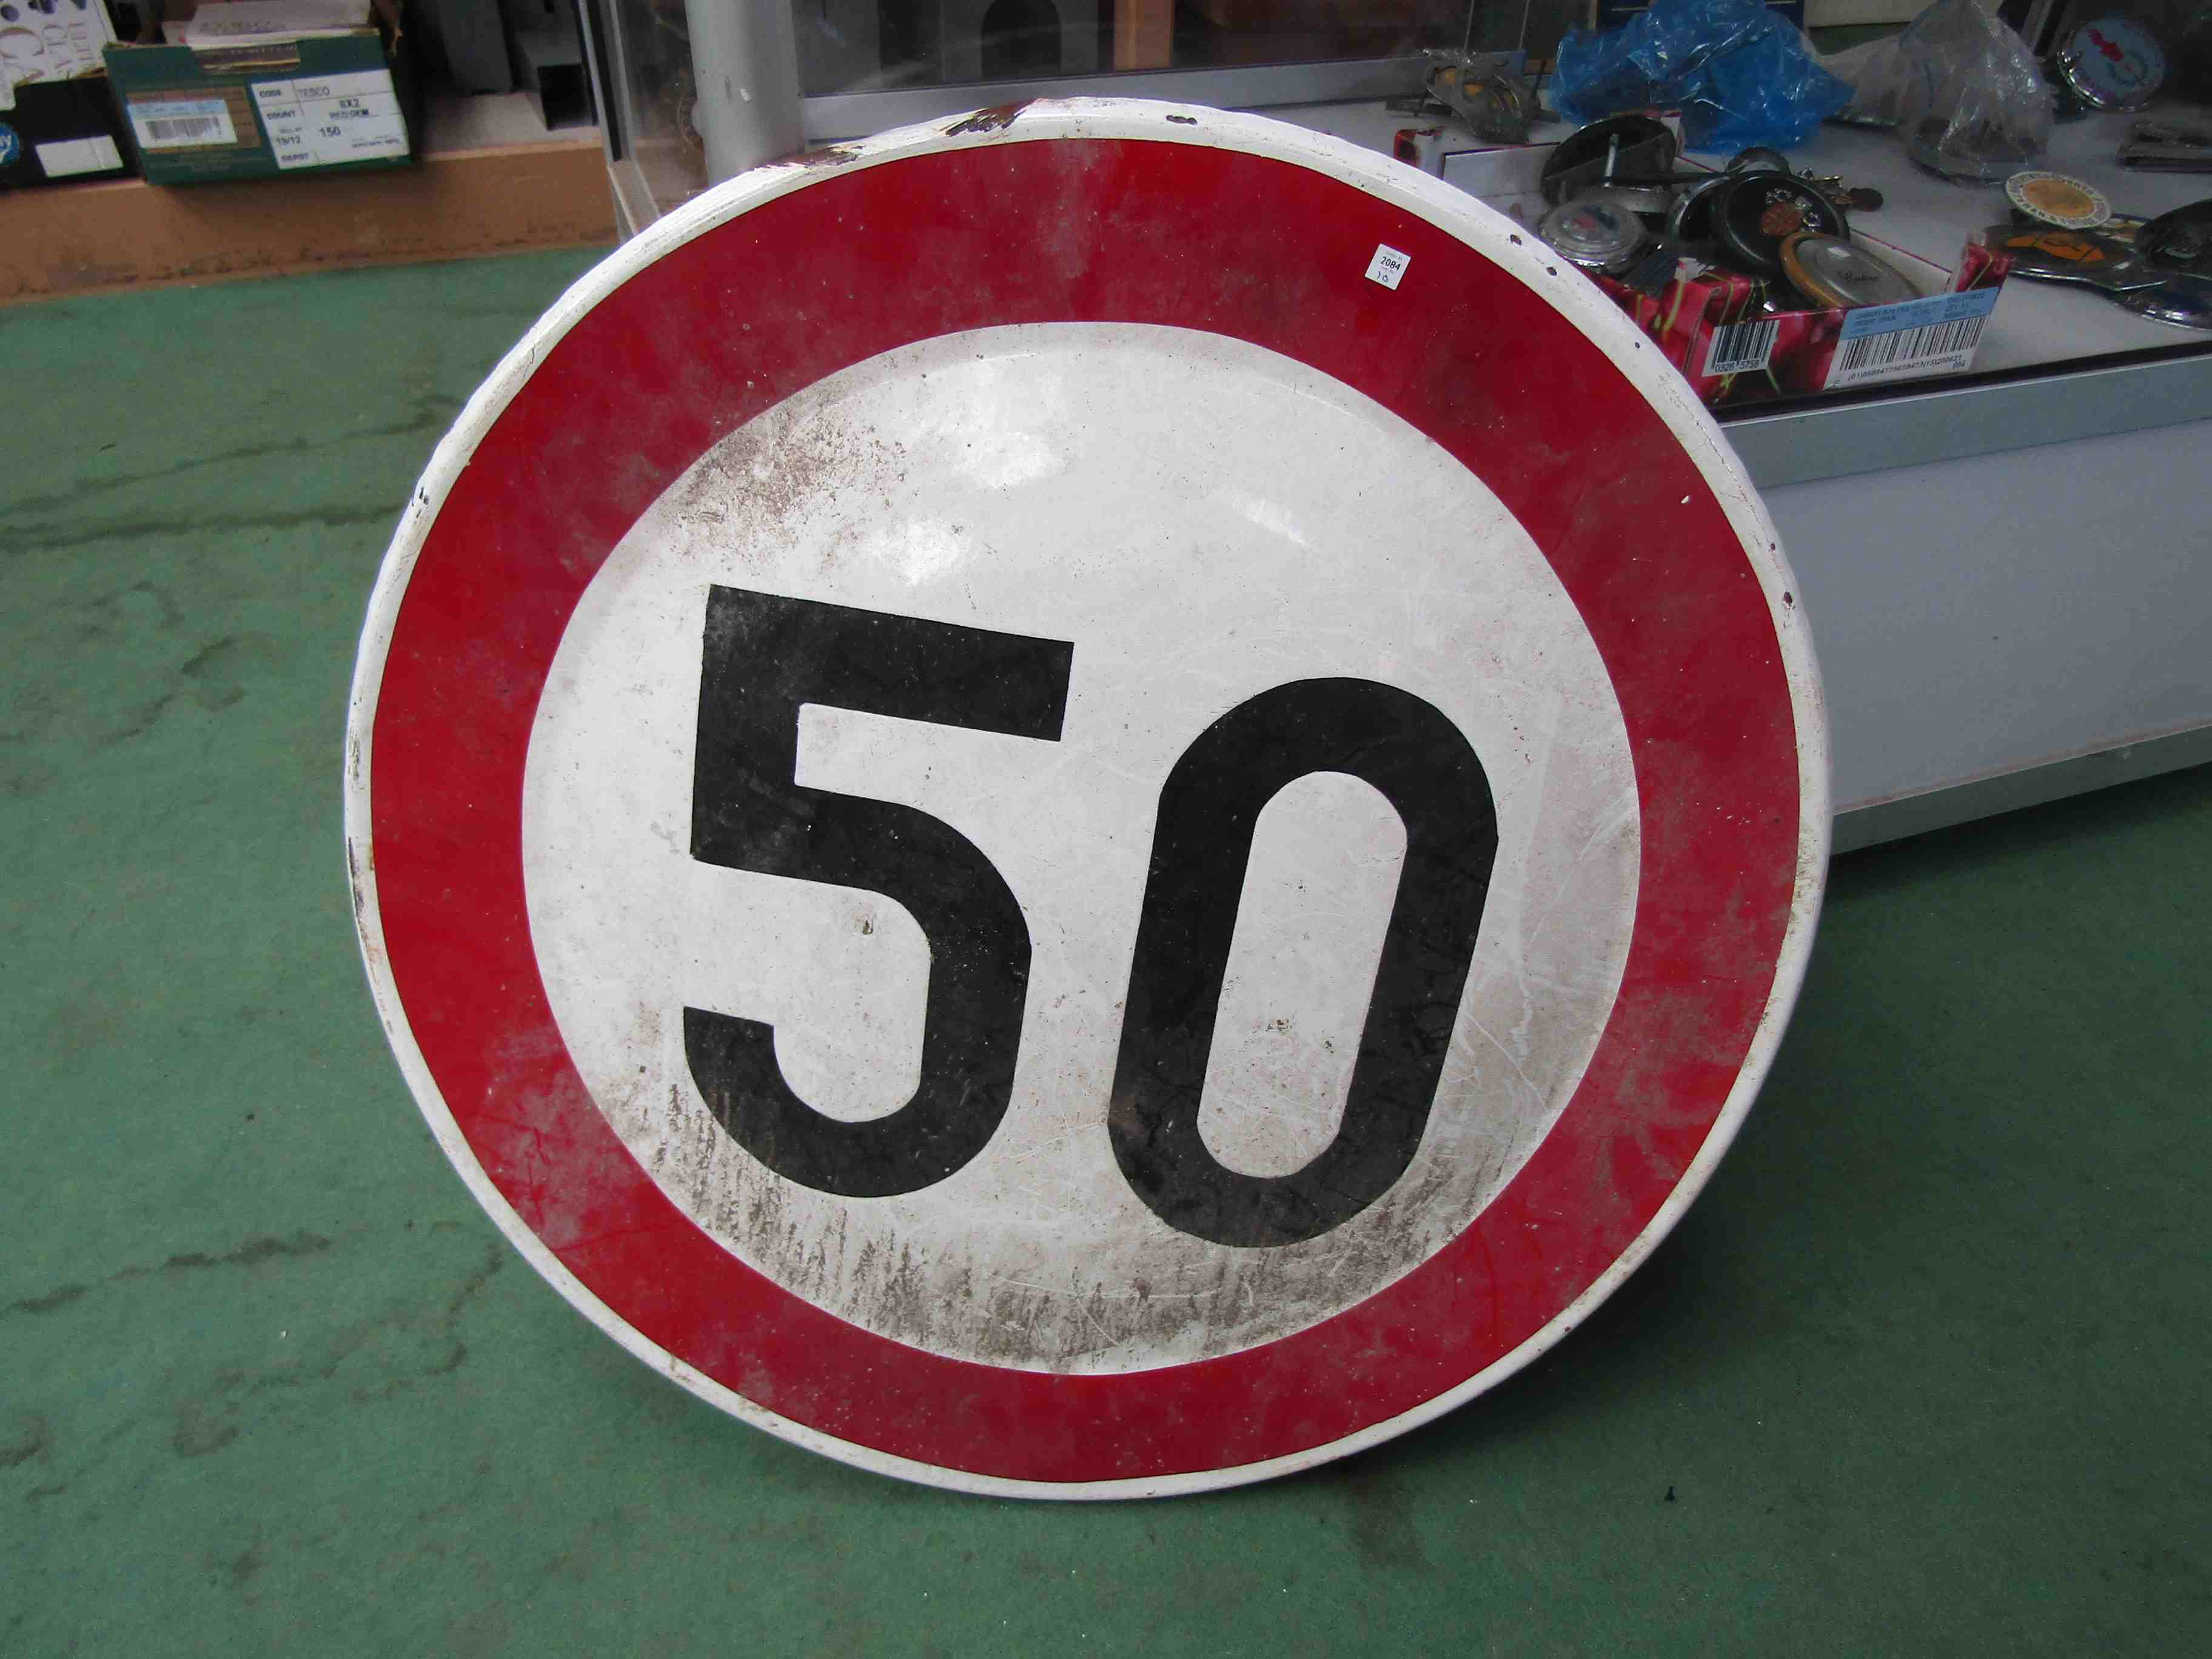 A circular 50mph road sign,